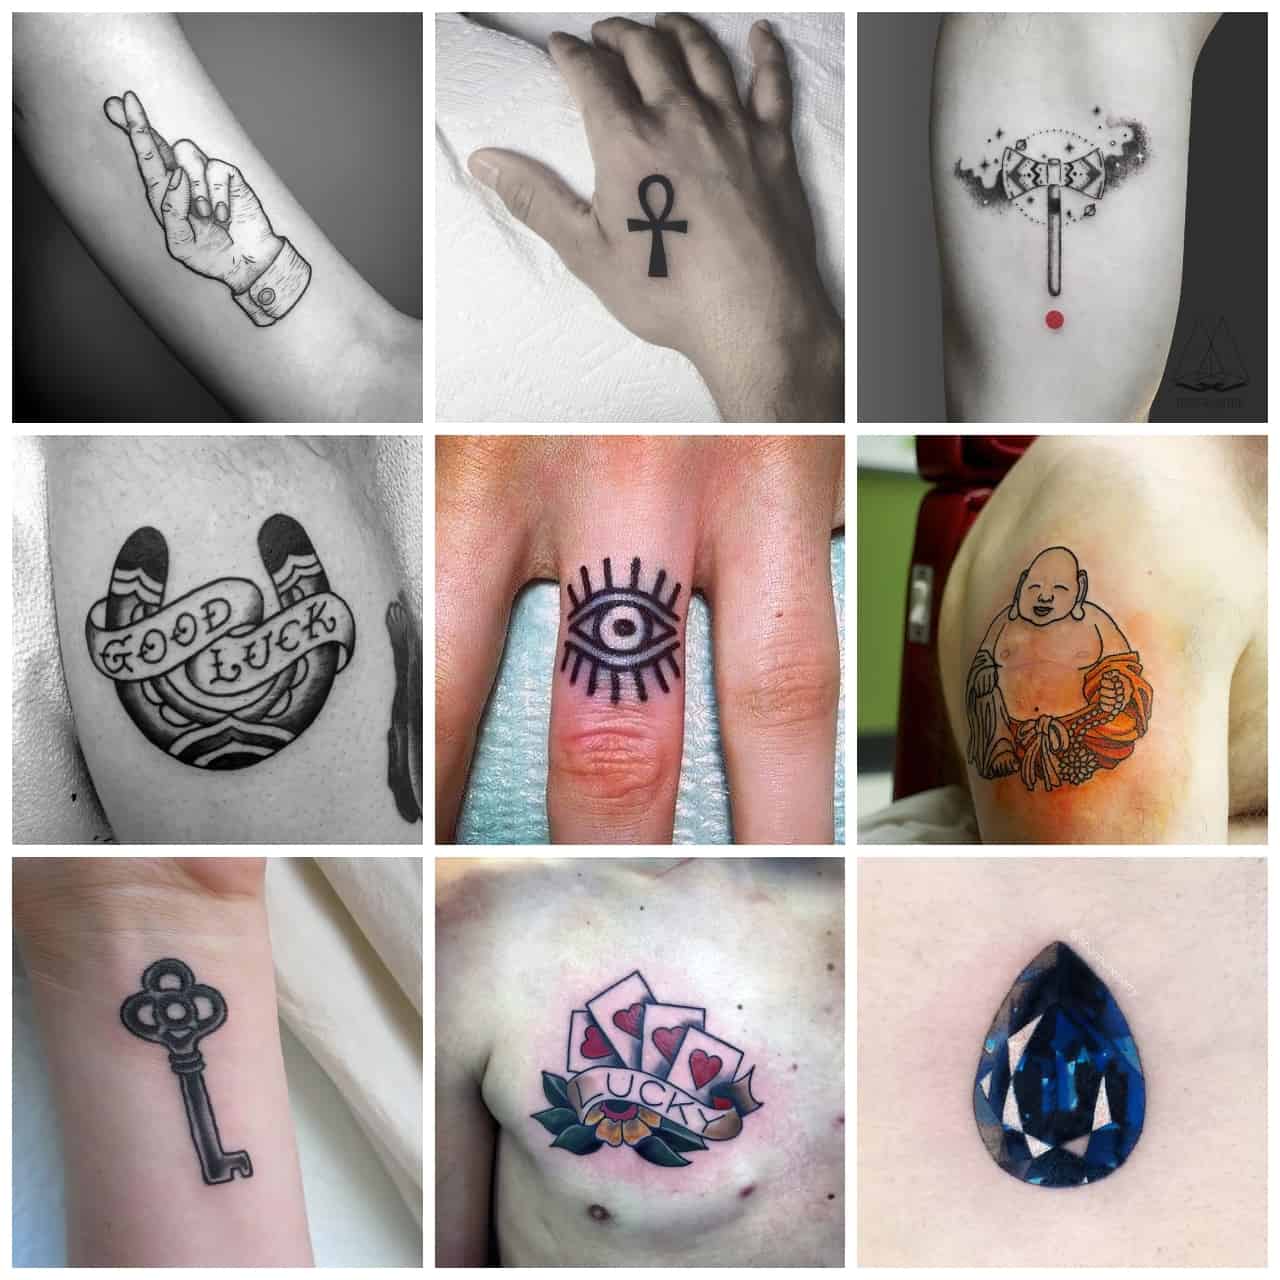 Lip's Ink Tattoo - Good vibes 👌 Hecho por @anita_lipsink . @balm_tattoo  @plass_balmtattoo @tattooshop.es #goodvibes #caligrafía #calligraphy #love  #linea #line #minimal #detalle #detail #lineworktattoo #art #tattoart  #design #tattoo #tattoos #tattooed ...